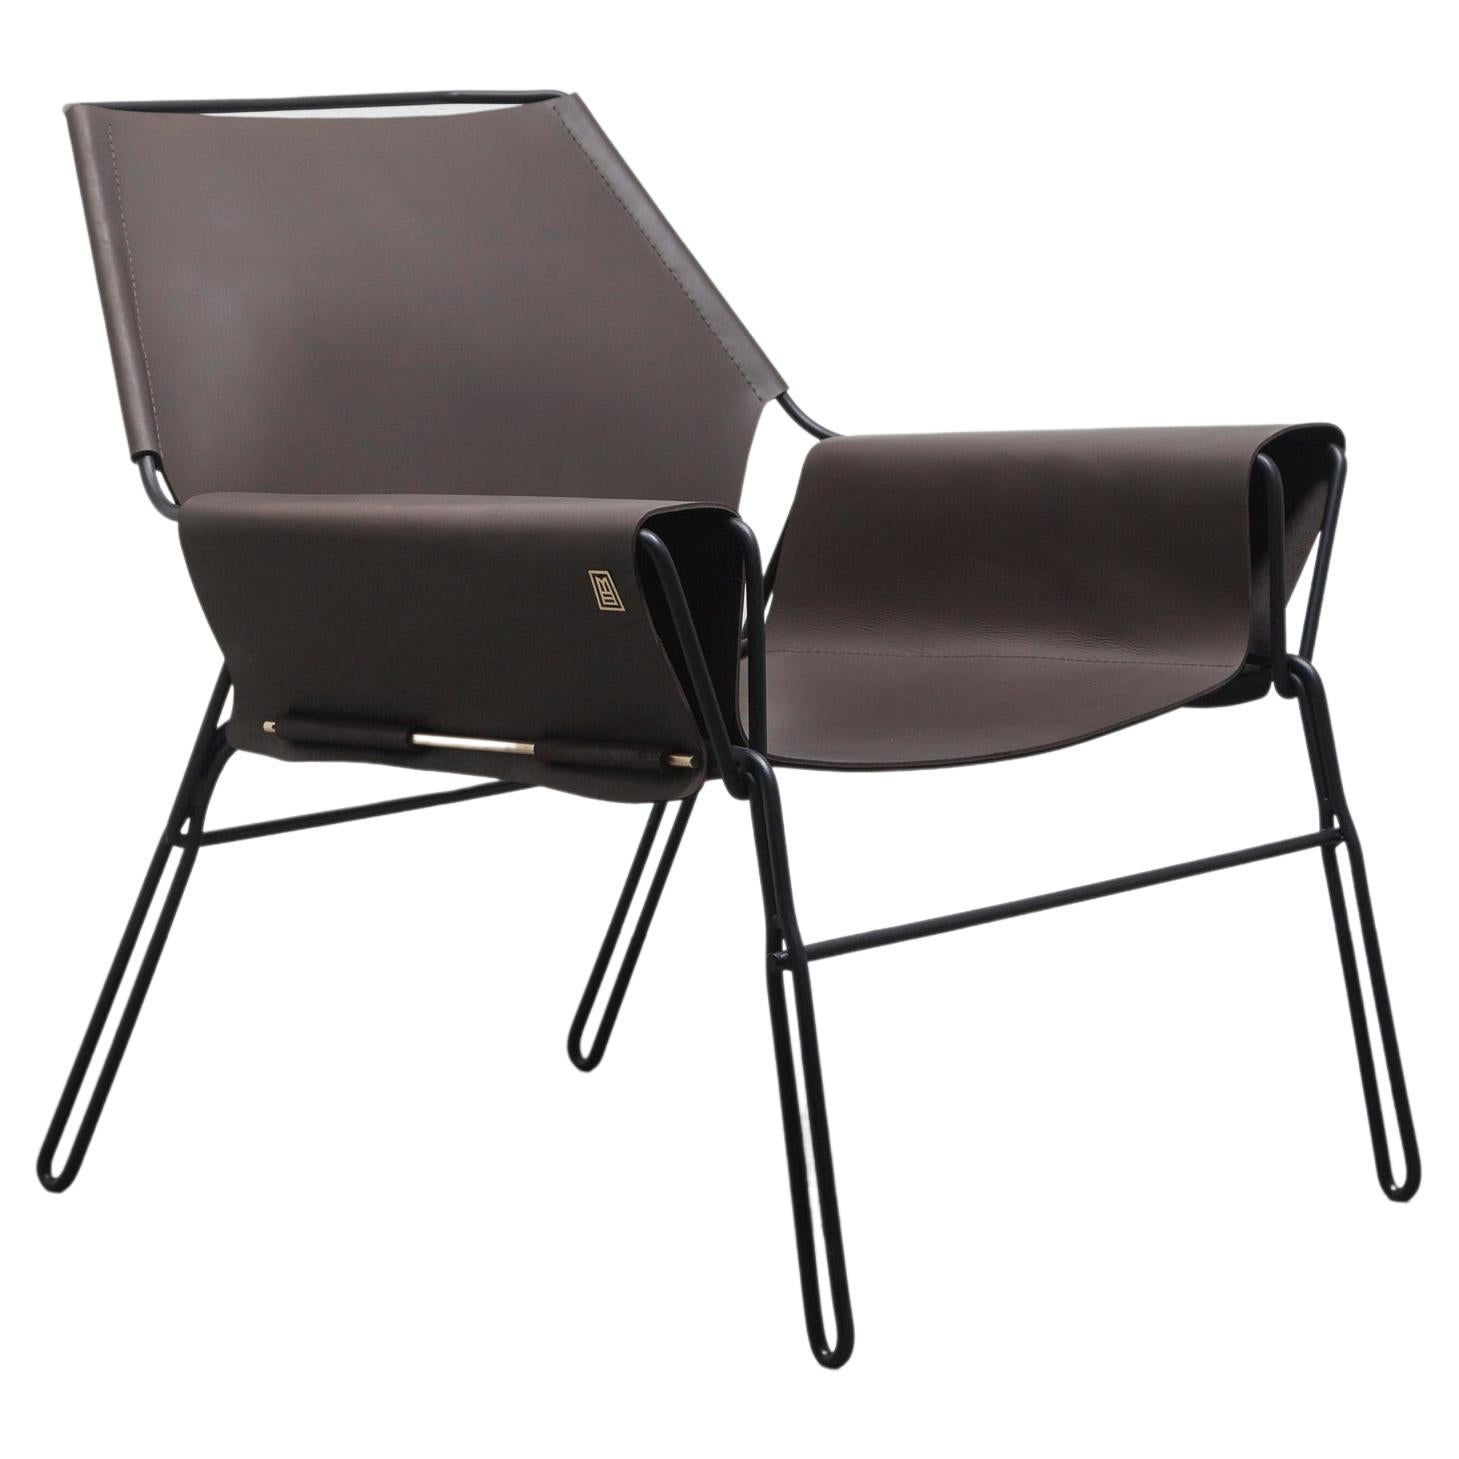 Perfidia_02 Lounge Chair Brown von ANDEAN, vertreten durch Tuleste Factory